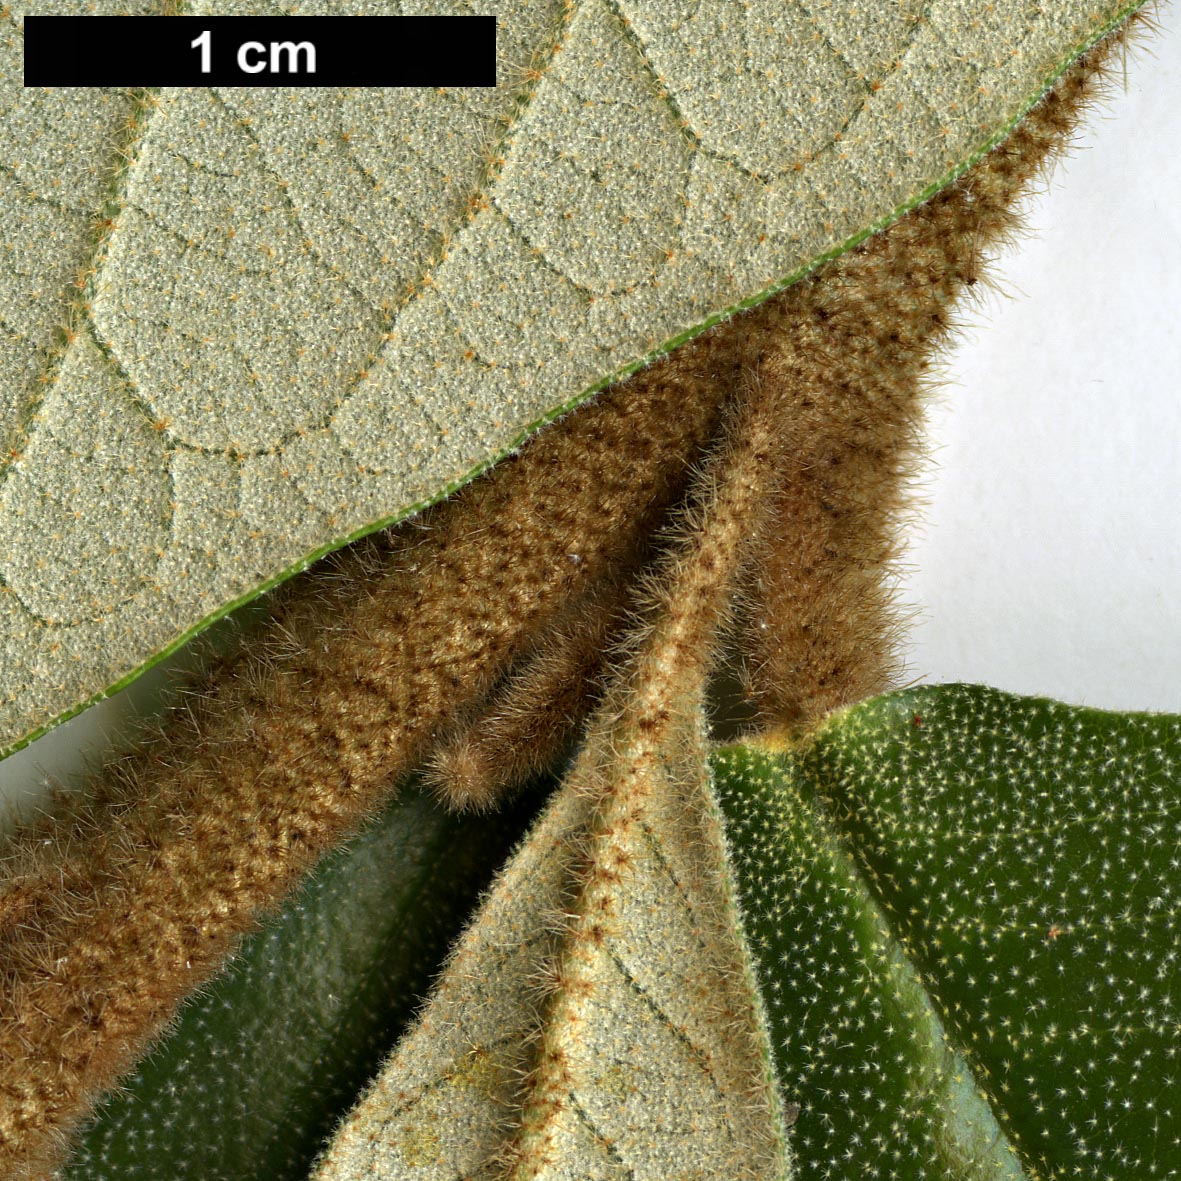 High resolution image: Family: Hamamelidaceae - Genus: Trichocladus - Taxon: ellipticus